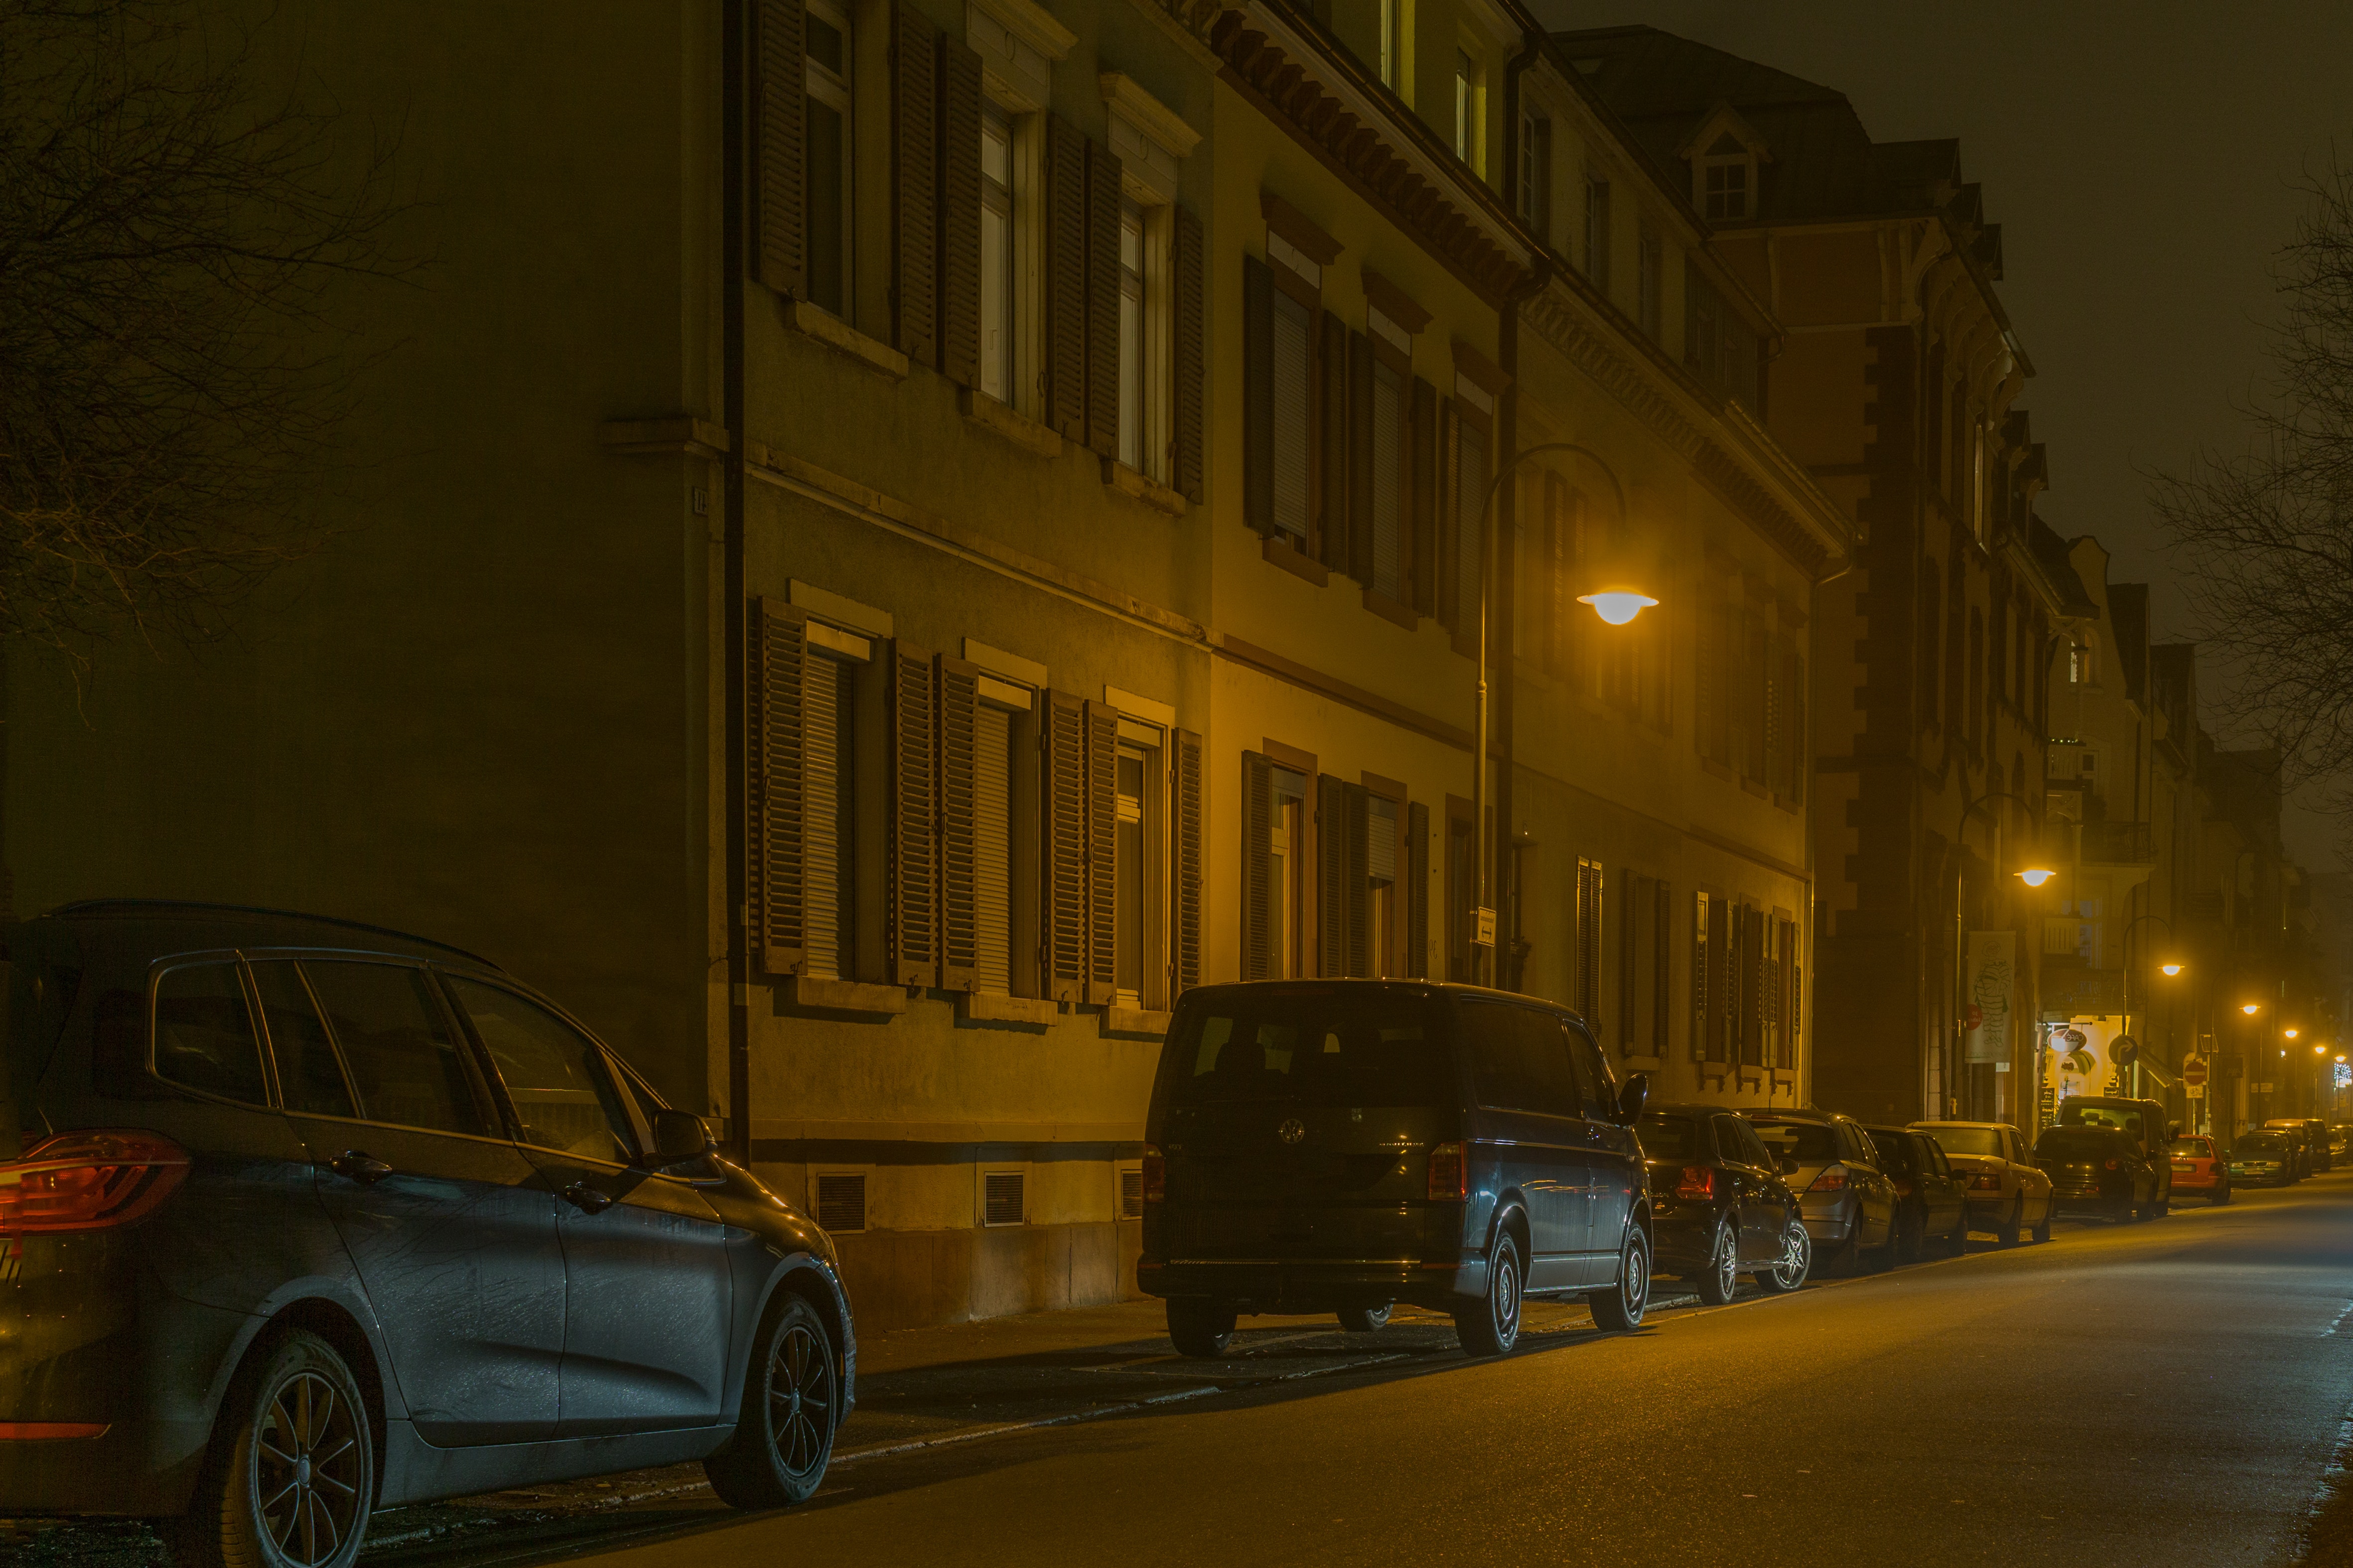 Cars in illuminated city at night photo